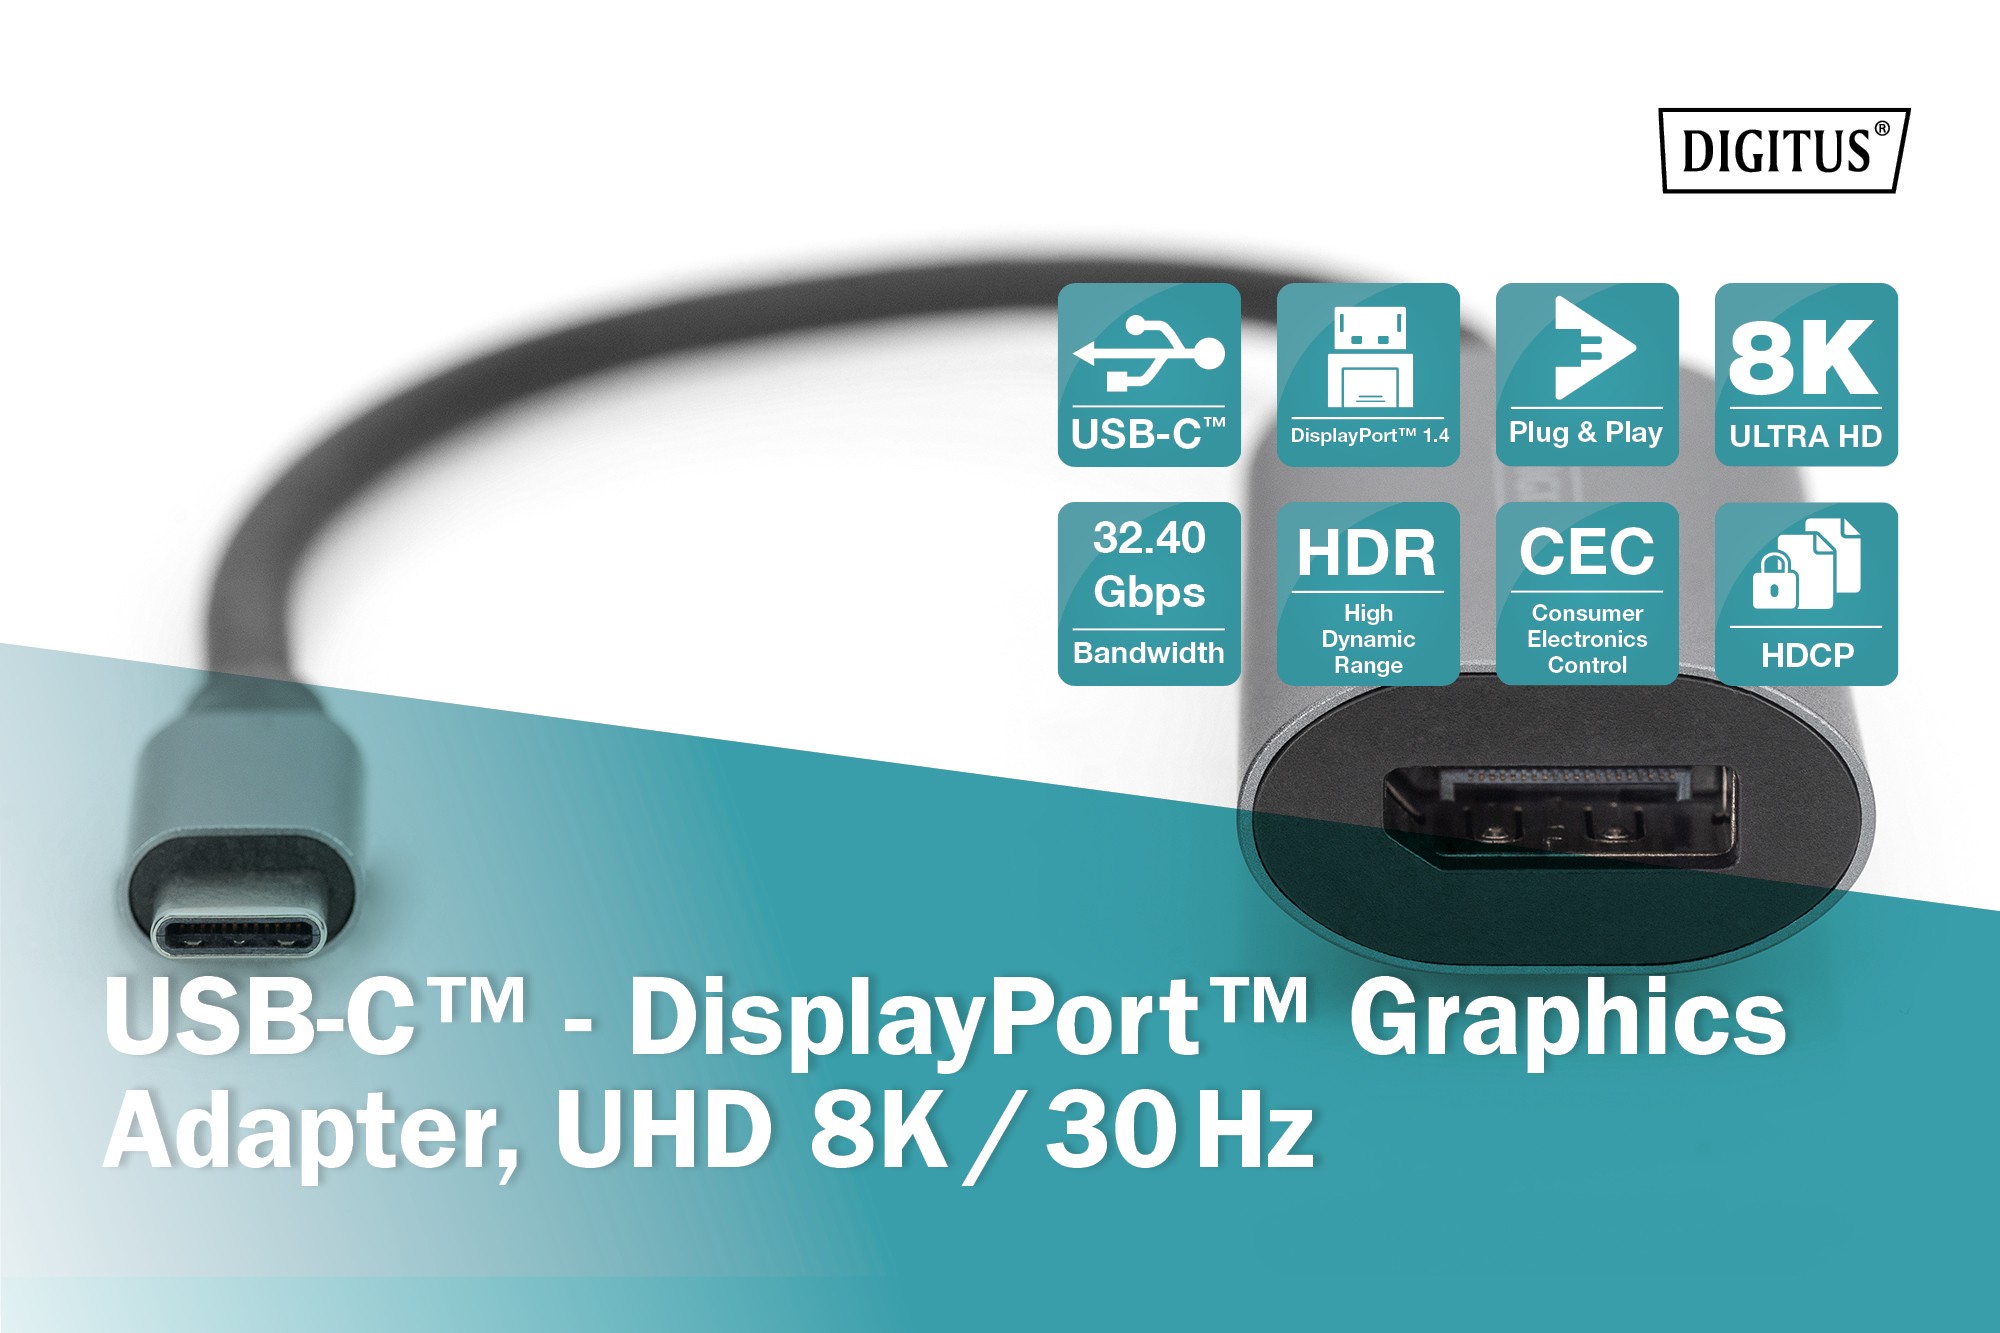 DA-70824  Adaptador gráfico USB-C? - DisplayPort, UHD 8K / 30 Hz ** Ultimas unidades****